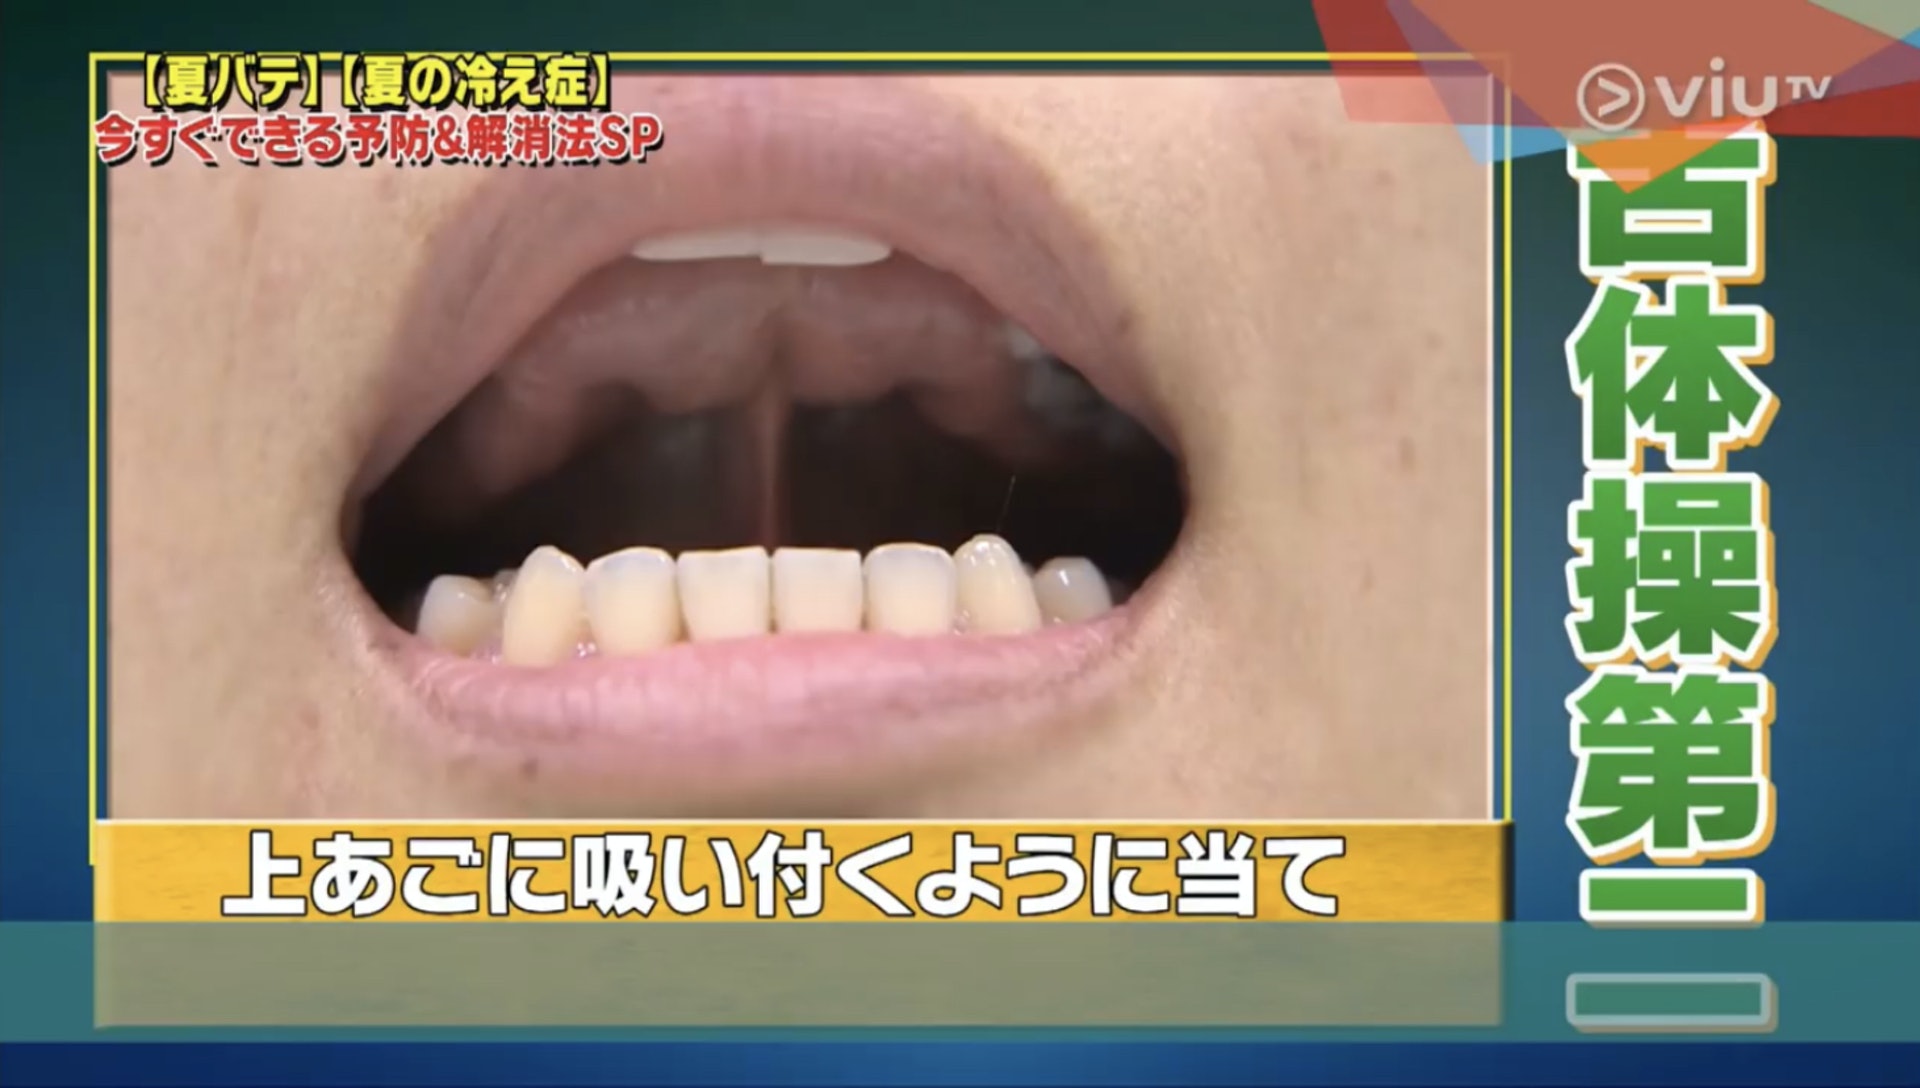 首先把把舌頭頂住上顎。（Viu TV《恐怖醫學》影片截圖）